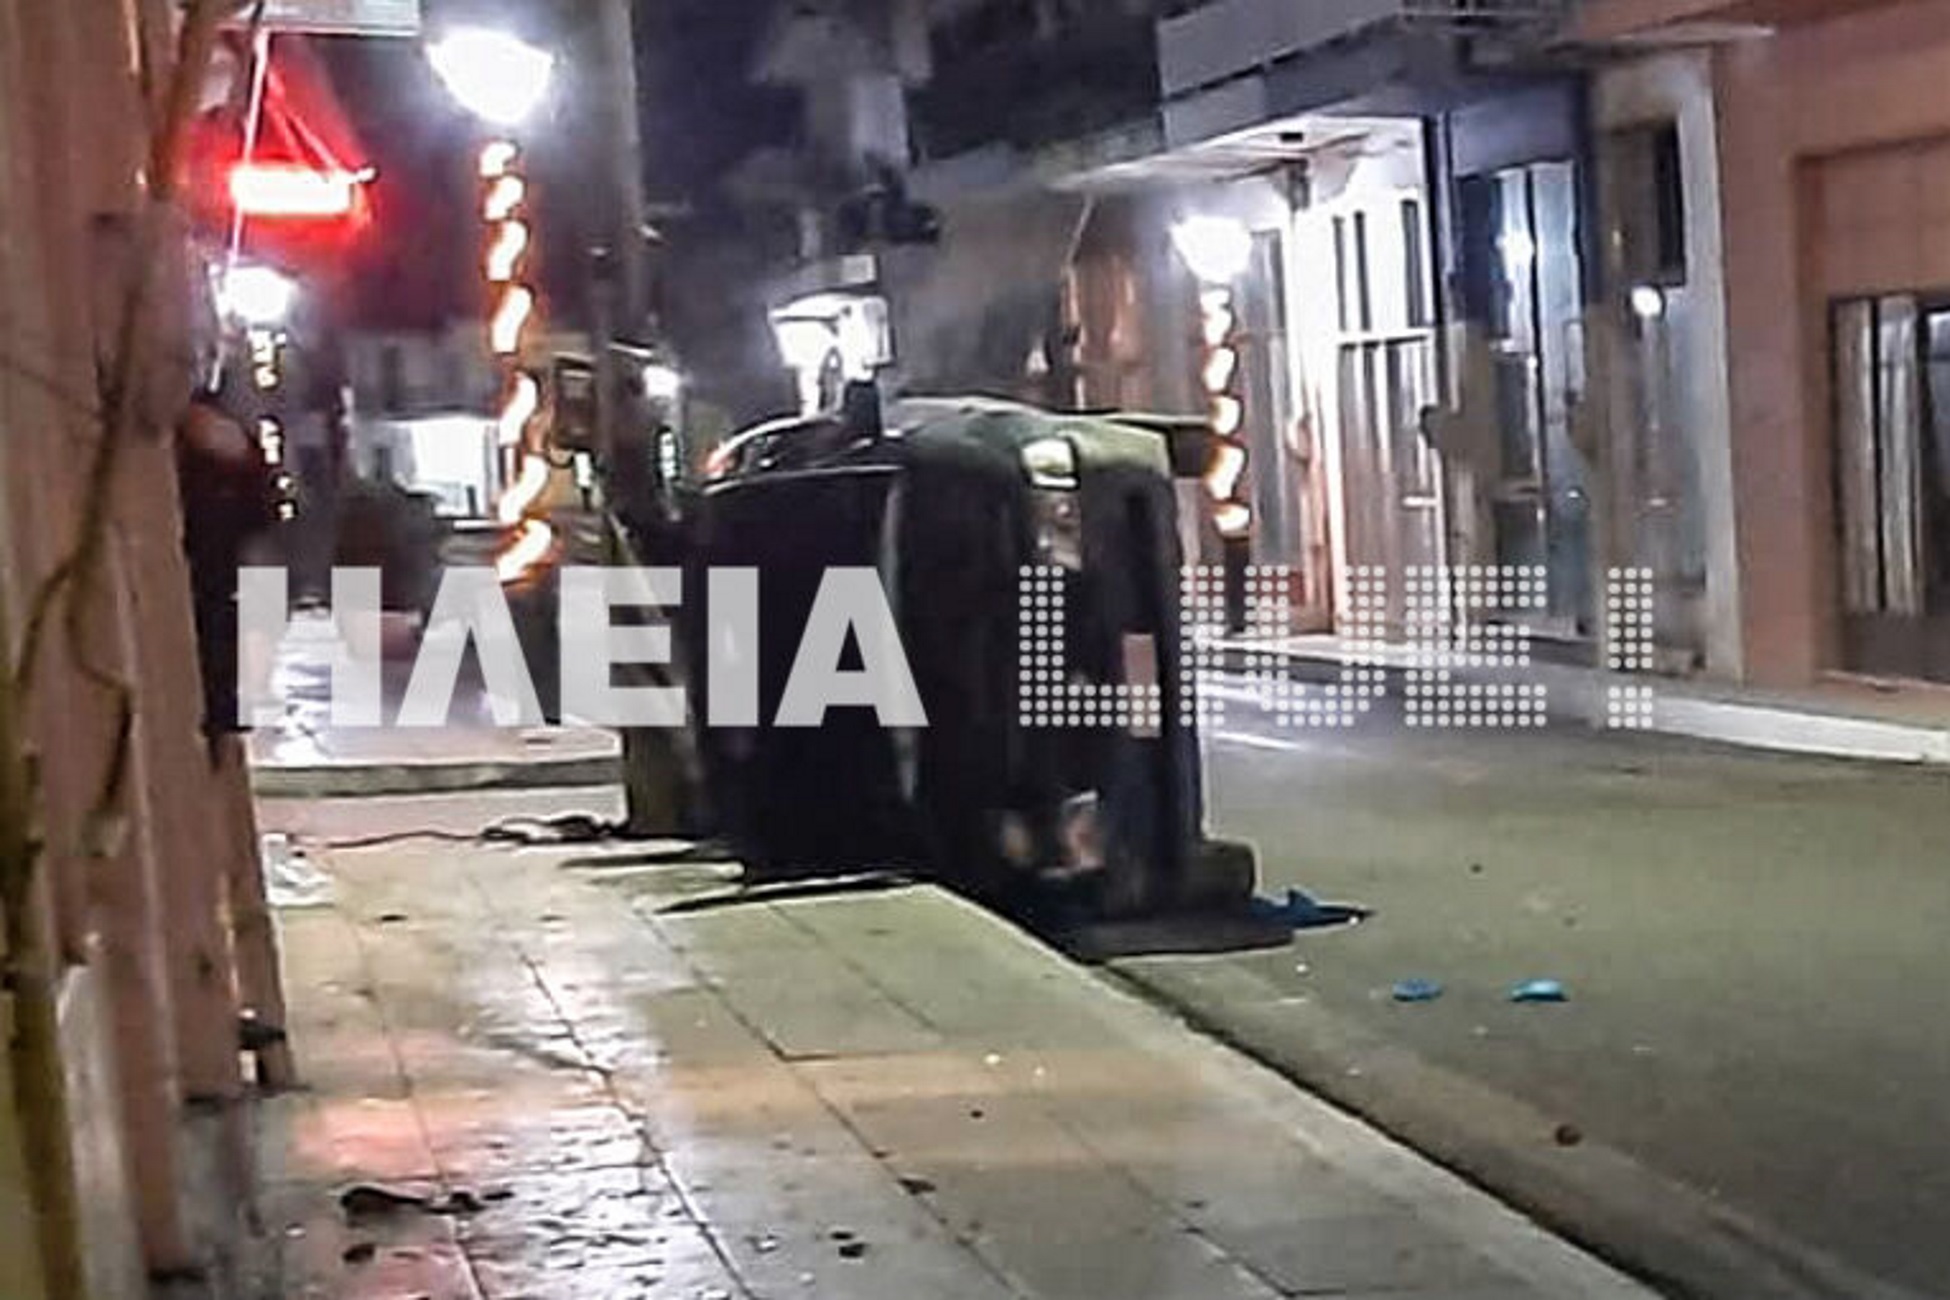 Ηλεία: Αυτοκίνητο έκοψε κολώνα φωτισμού και διέλυσε καφενείο! Δύο σοβαρά τραυματίες στο τροχαίο [pics, video]